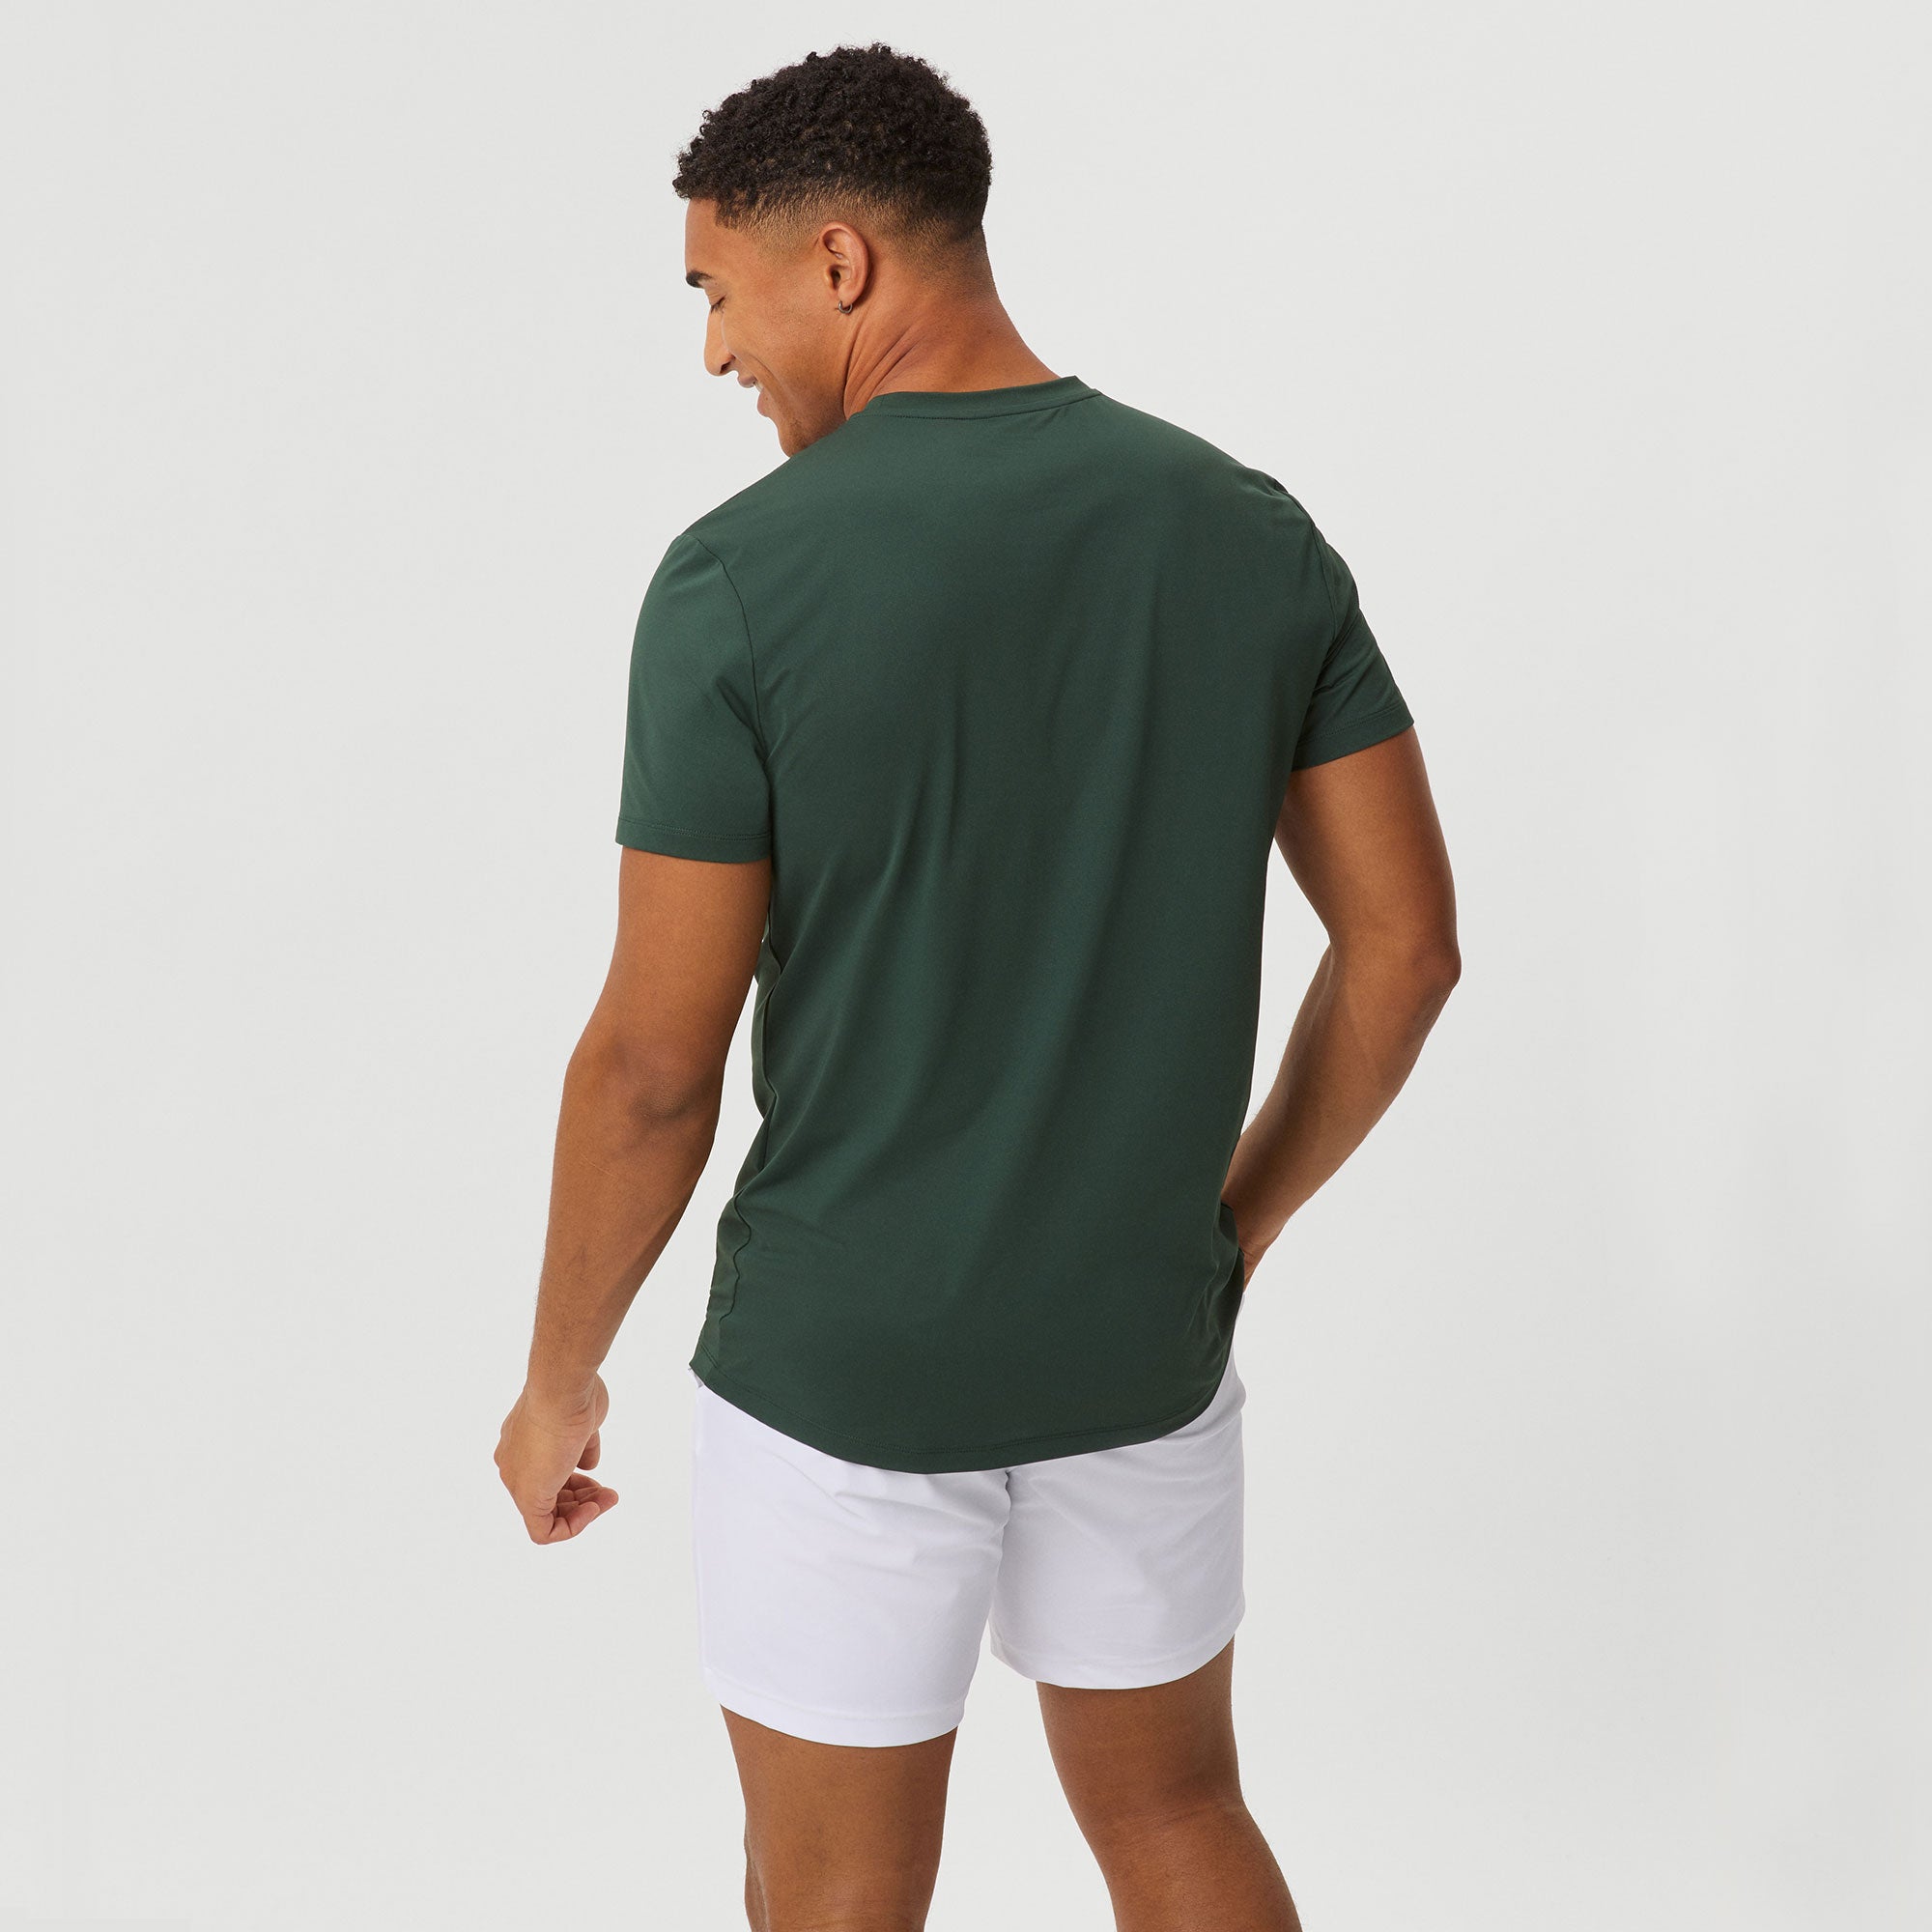 Björn Borg Ace Men's Light Tennis Shirt - Green (2)